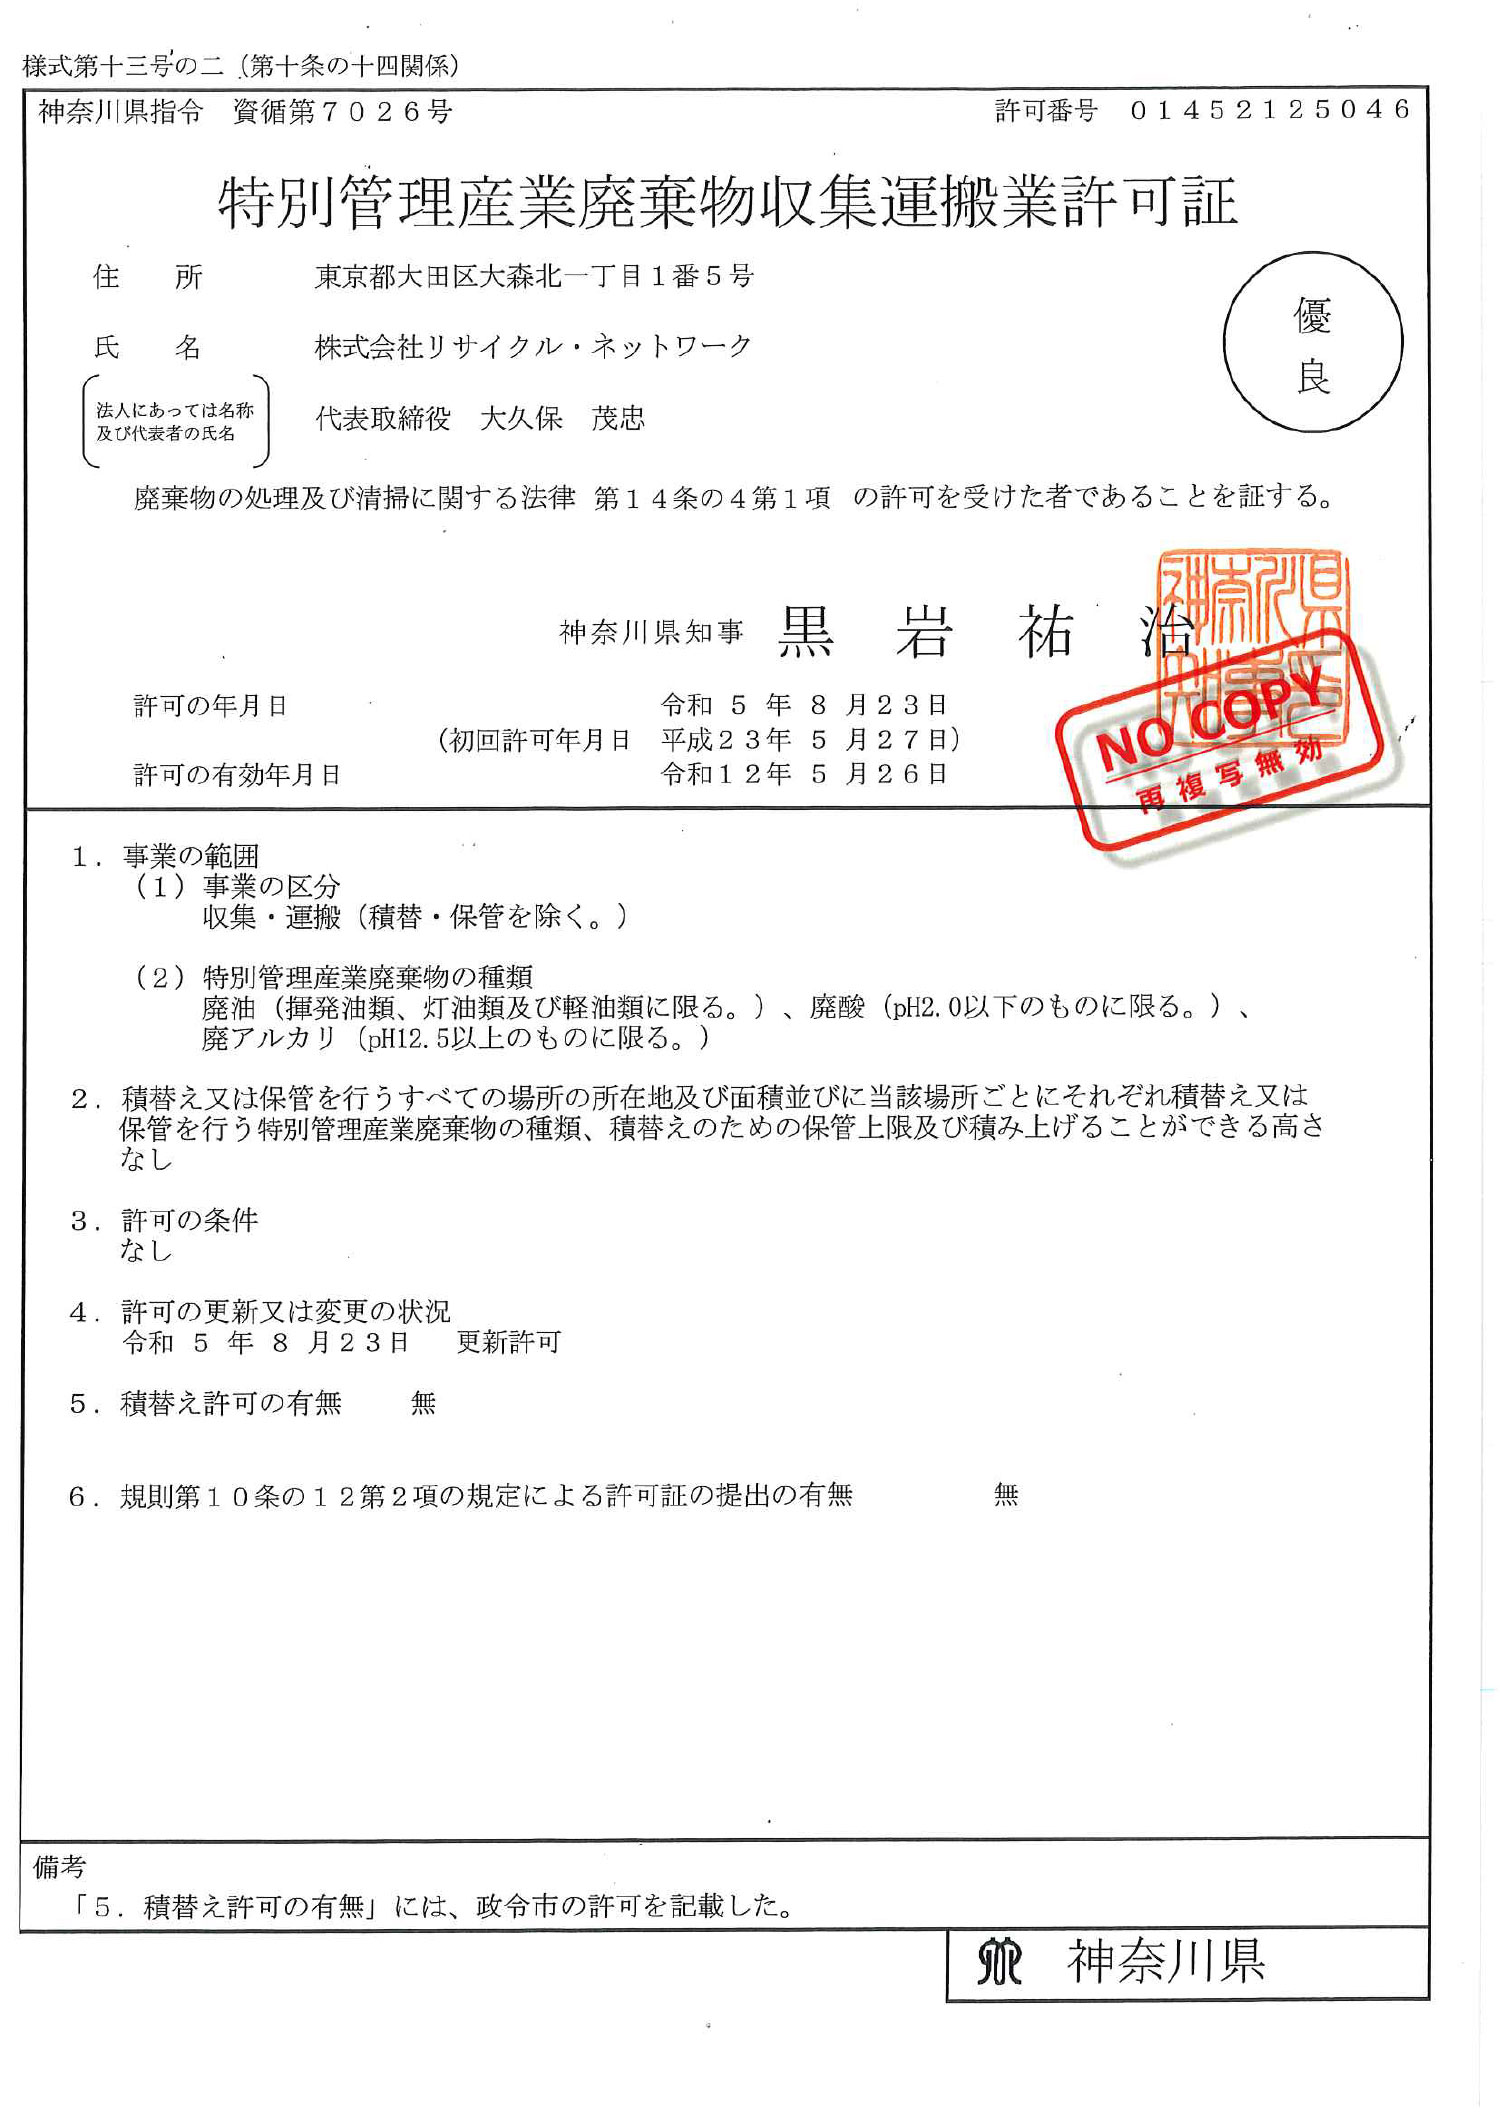 神奈川県 特別管理産業廃棄物収集運搬許可証